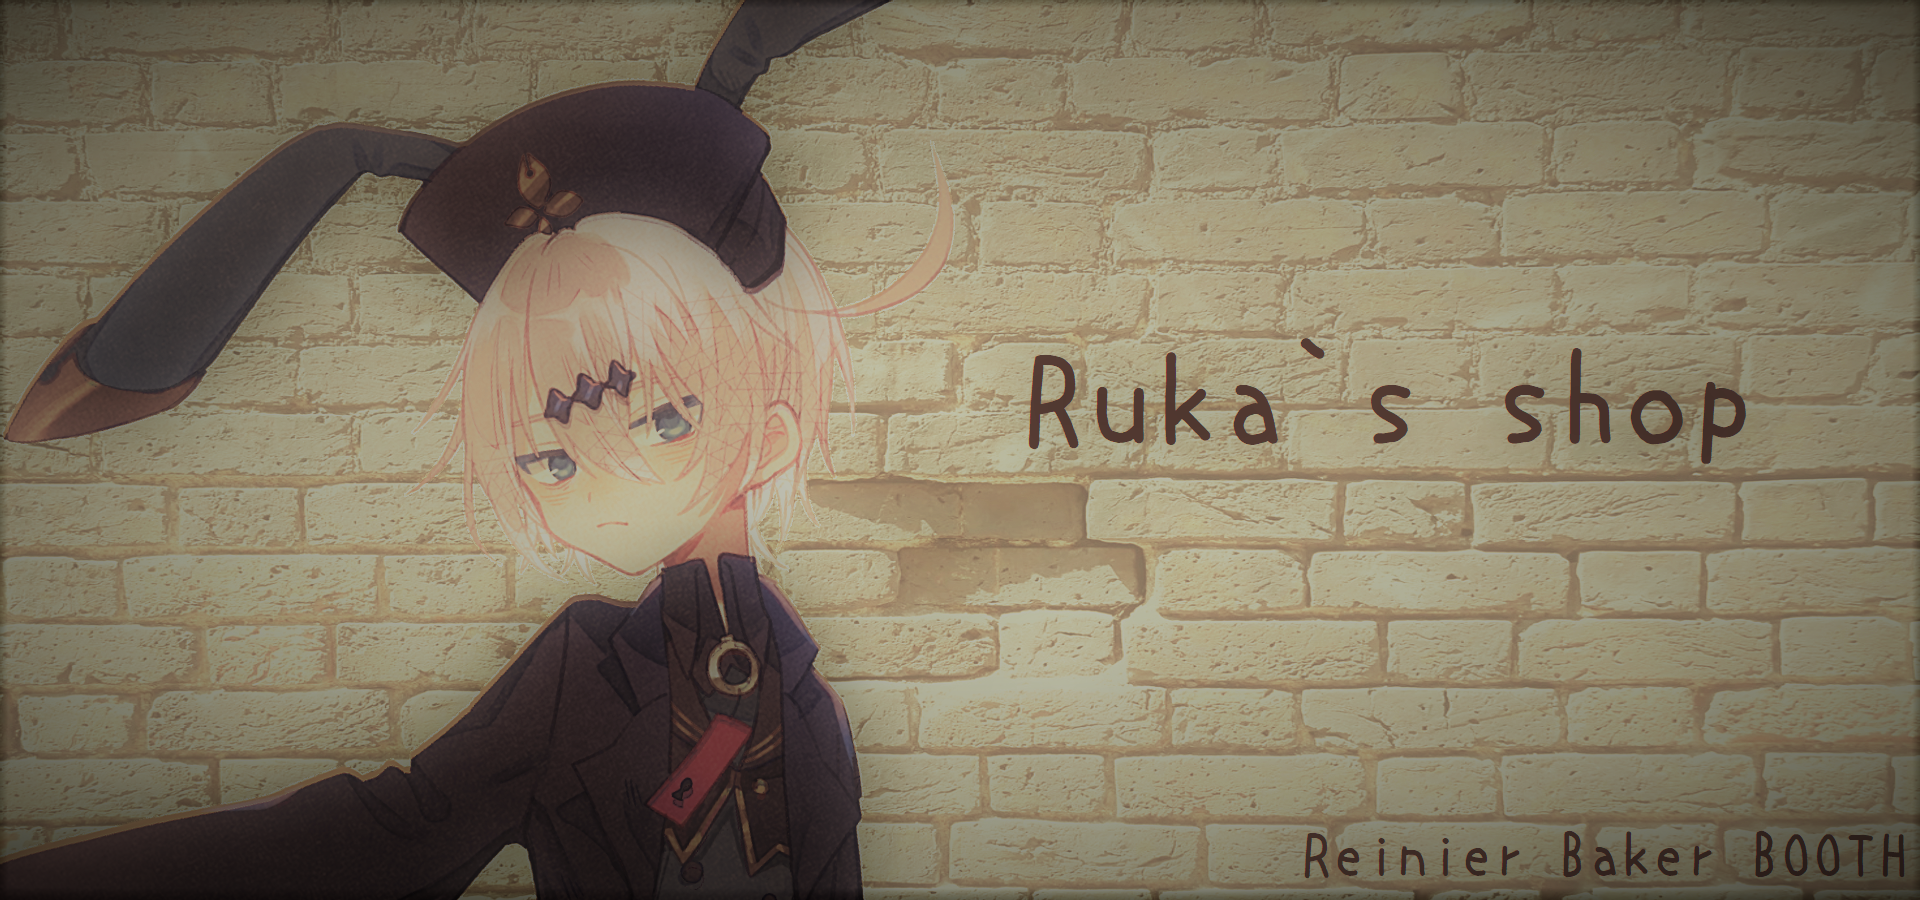 Ruka's shop